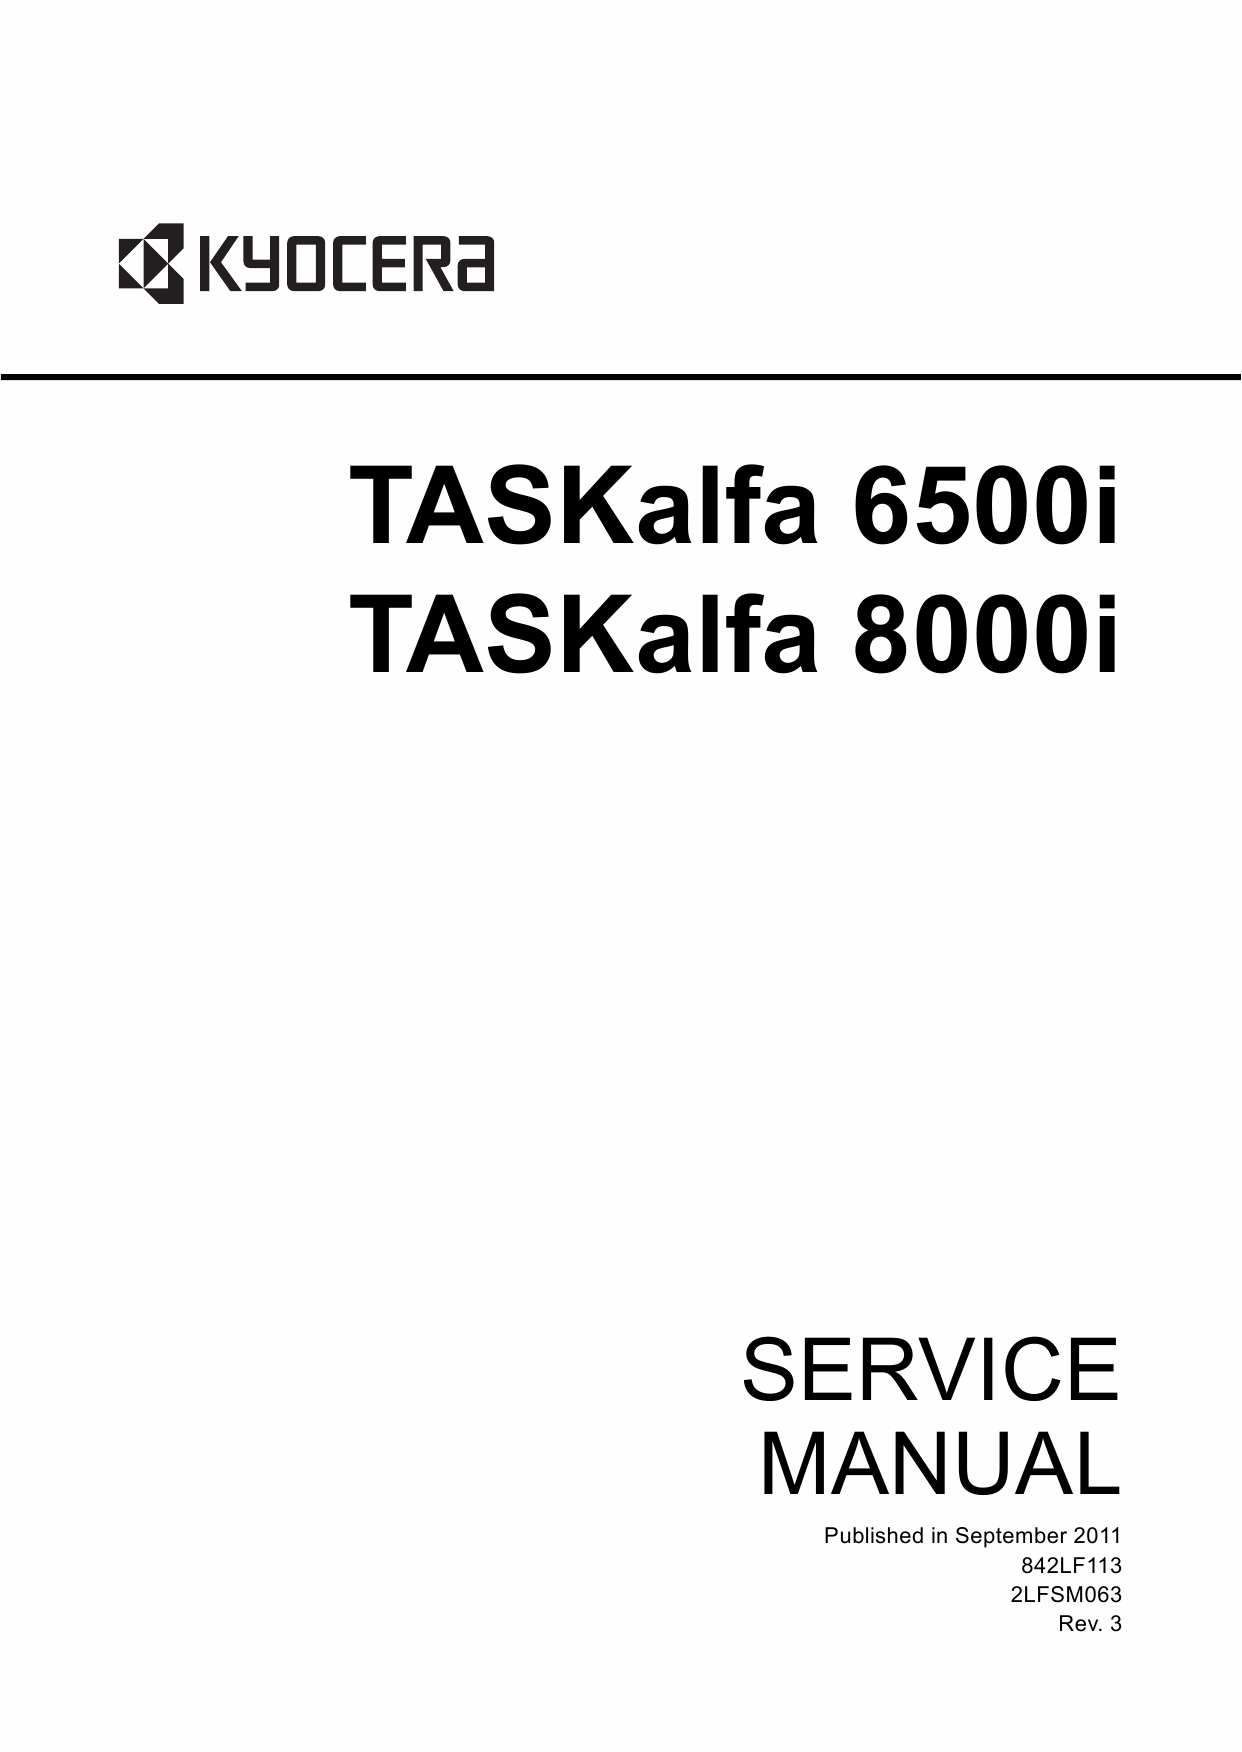 KYOCERA MFP TASKalfa-6500i 8000i Service Manual-1